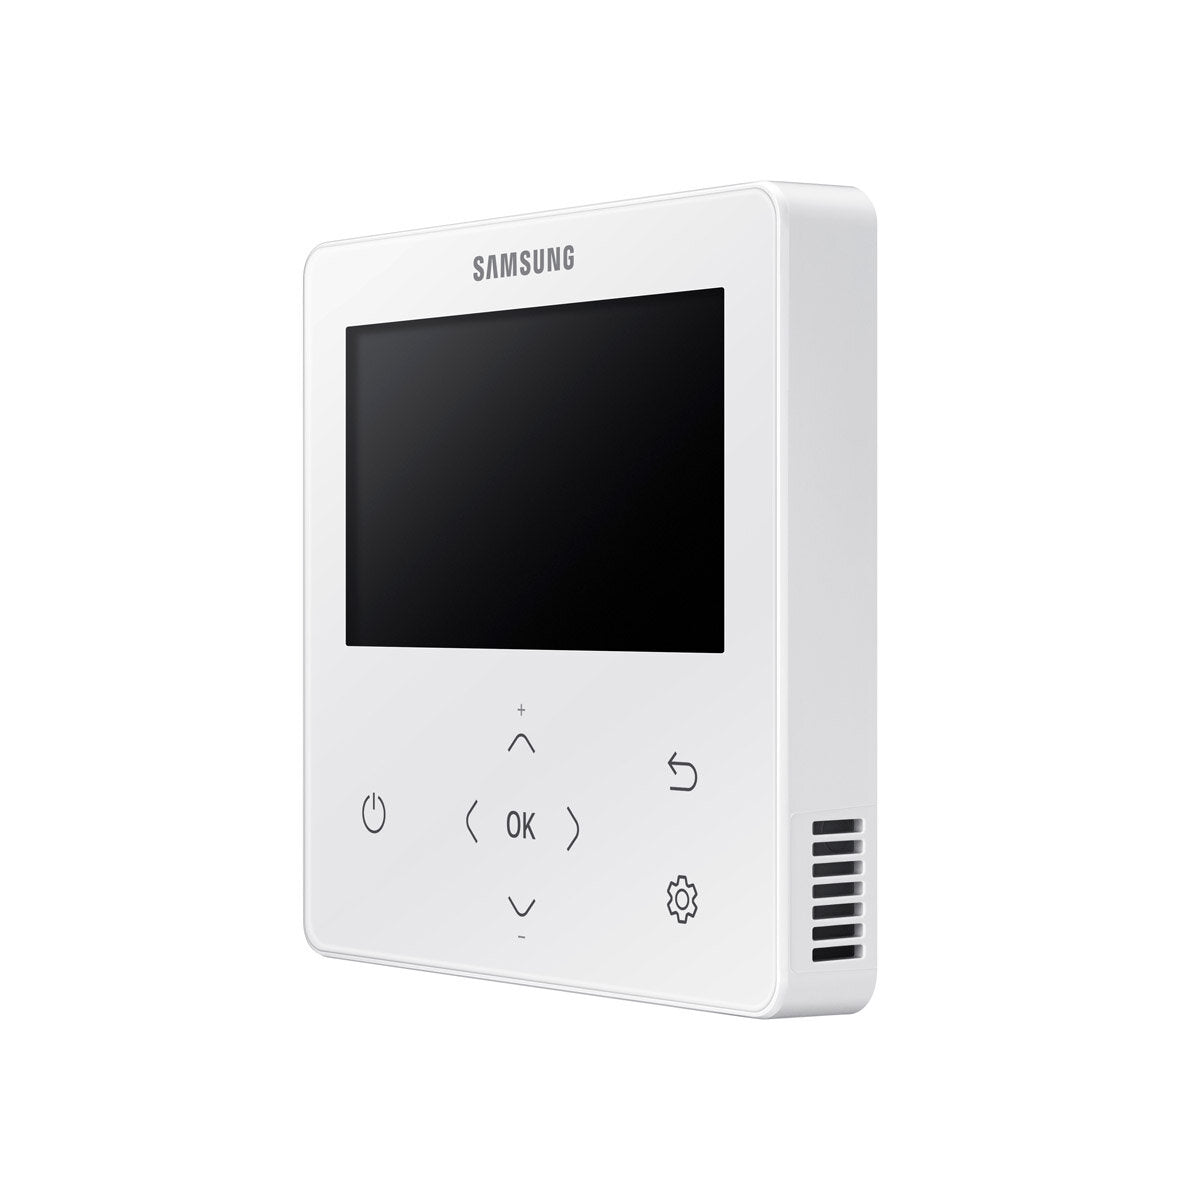 Samsung Air Conditioner Cassette WindFree 1 Way trial split 12000 + 12000 + 12000 BTU inverter A ++ outdoor unit 8.0 kW